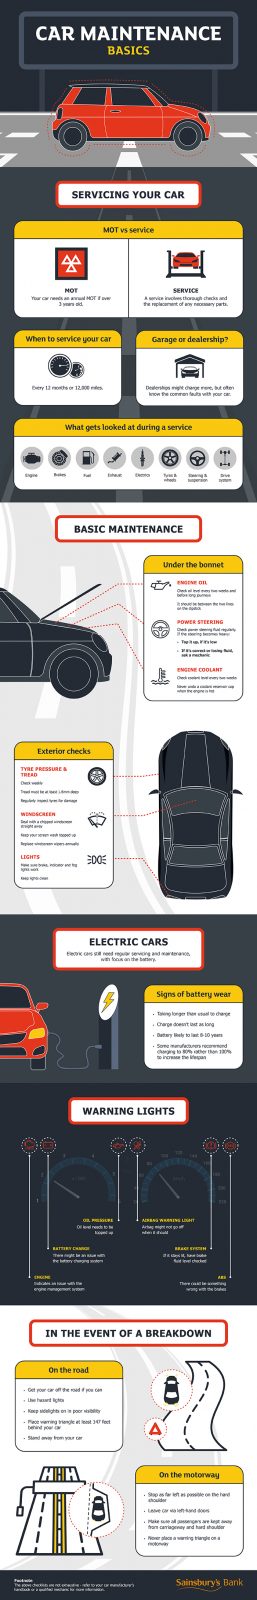 Sainsbury’s Bank Visual Guide to Car Maintenance